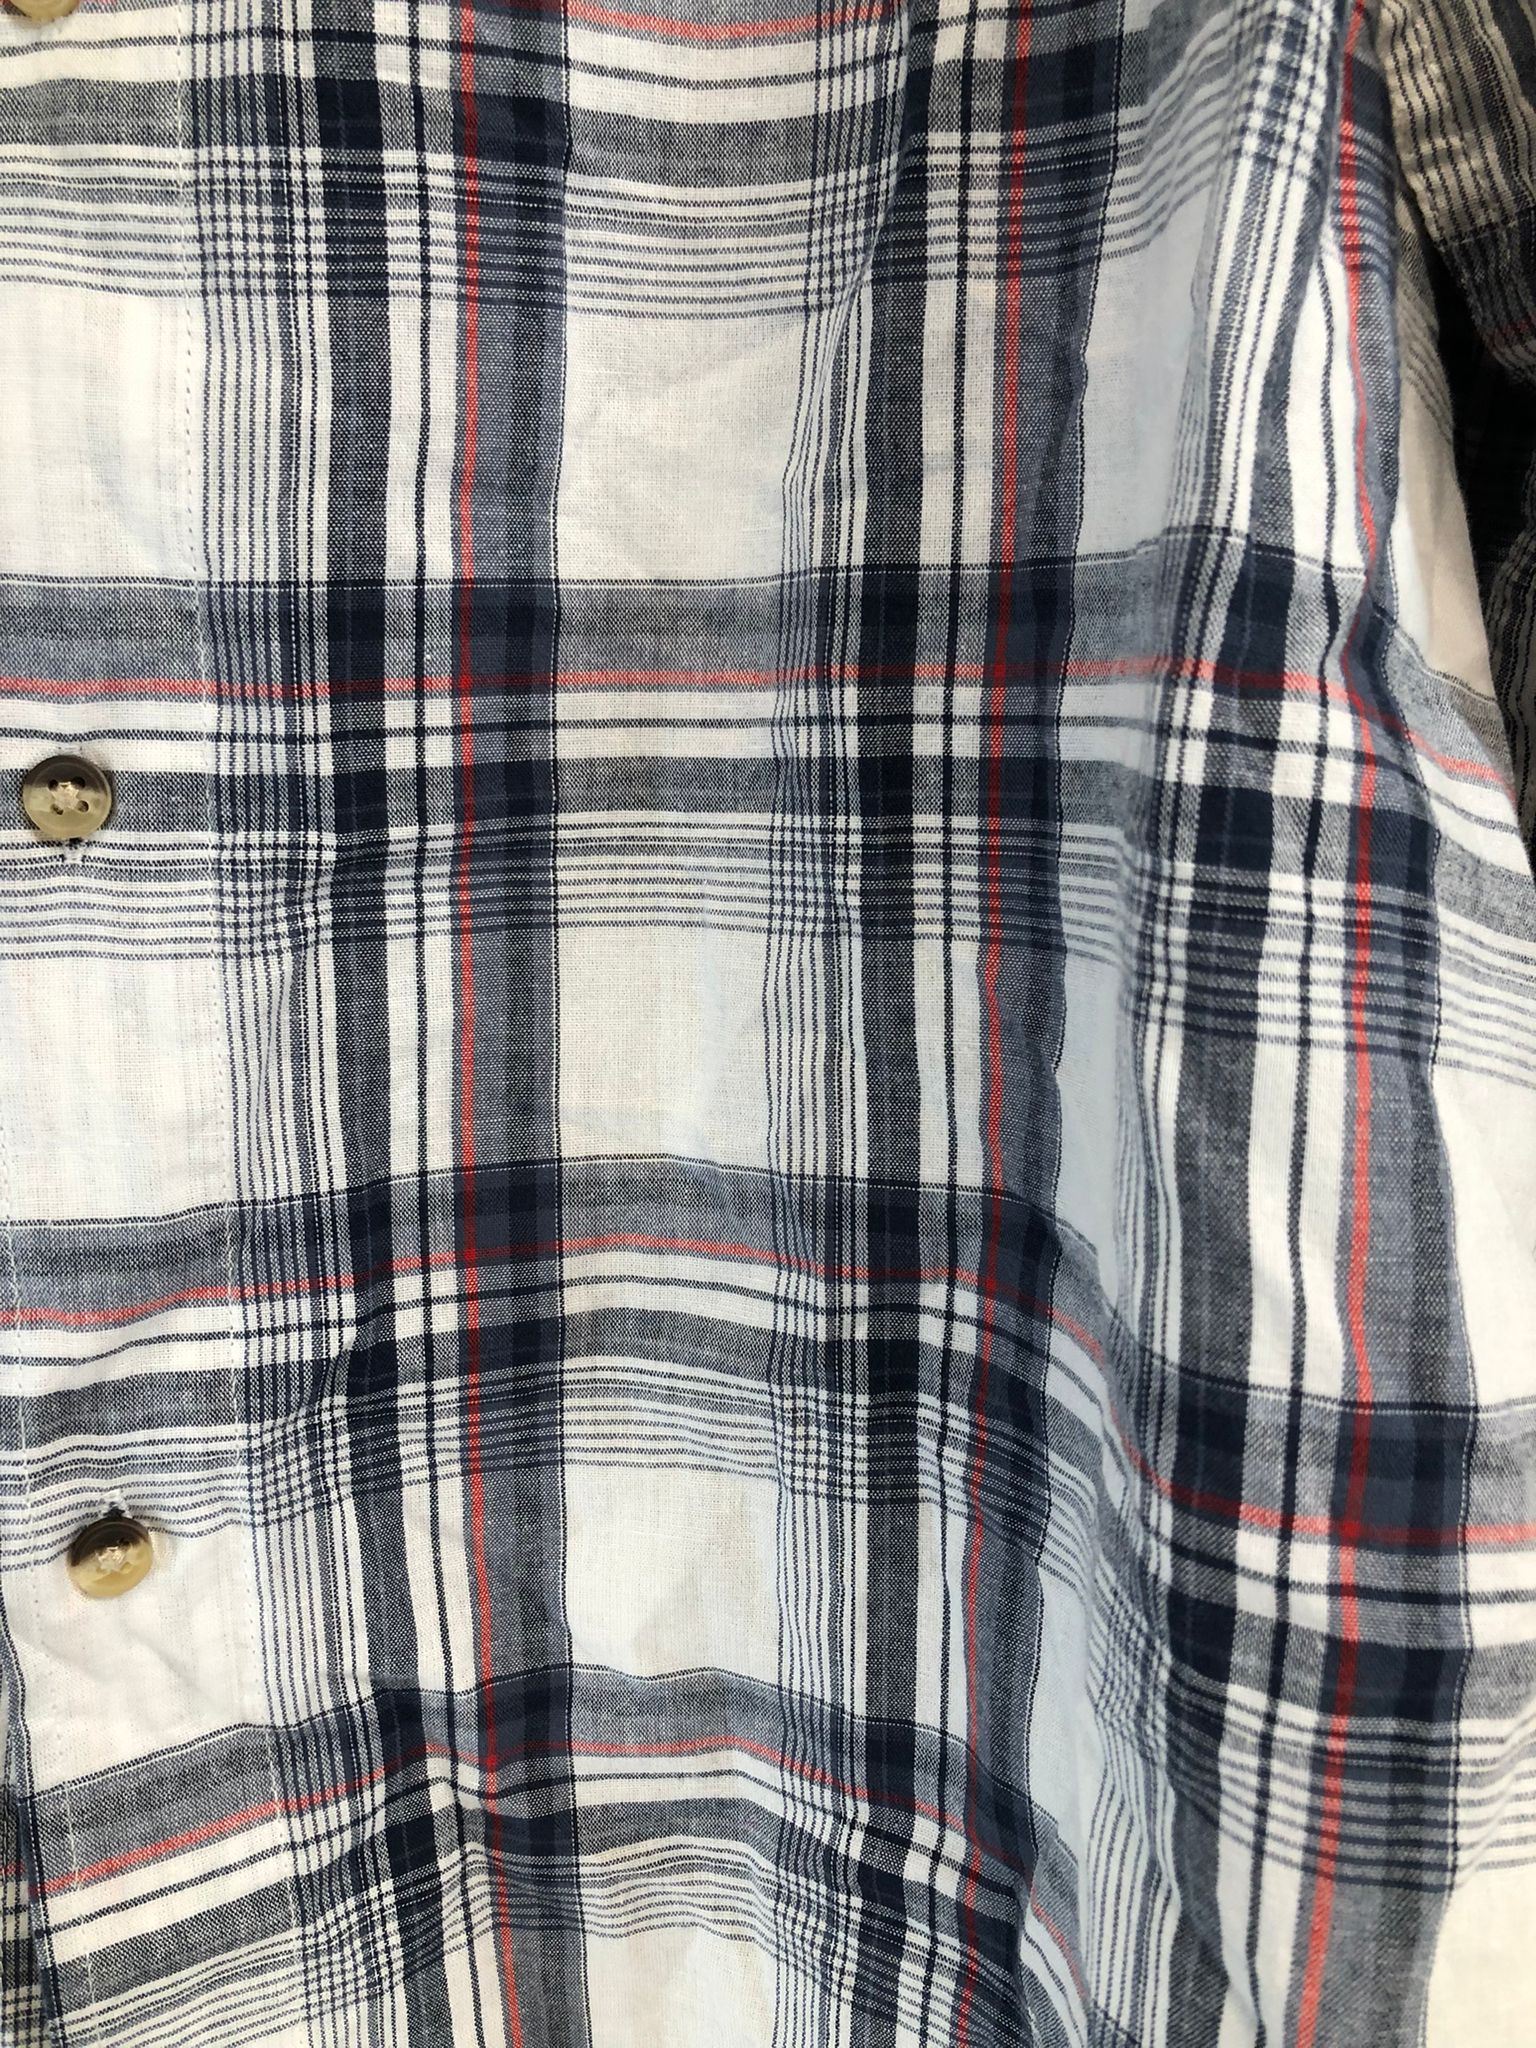 Wrangler Men's Regular Fit Plaid Long Sleeve Shirt